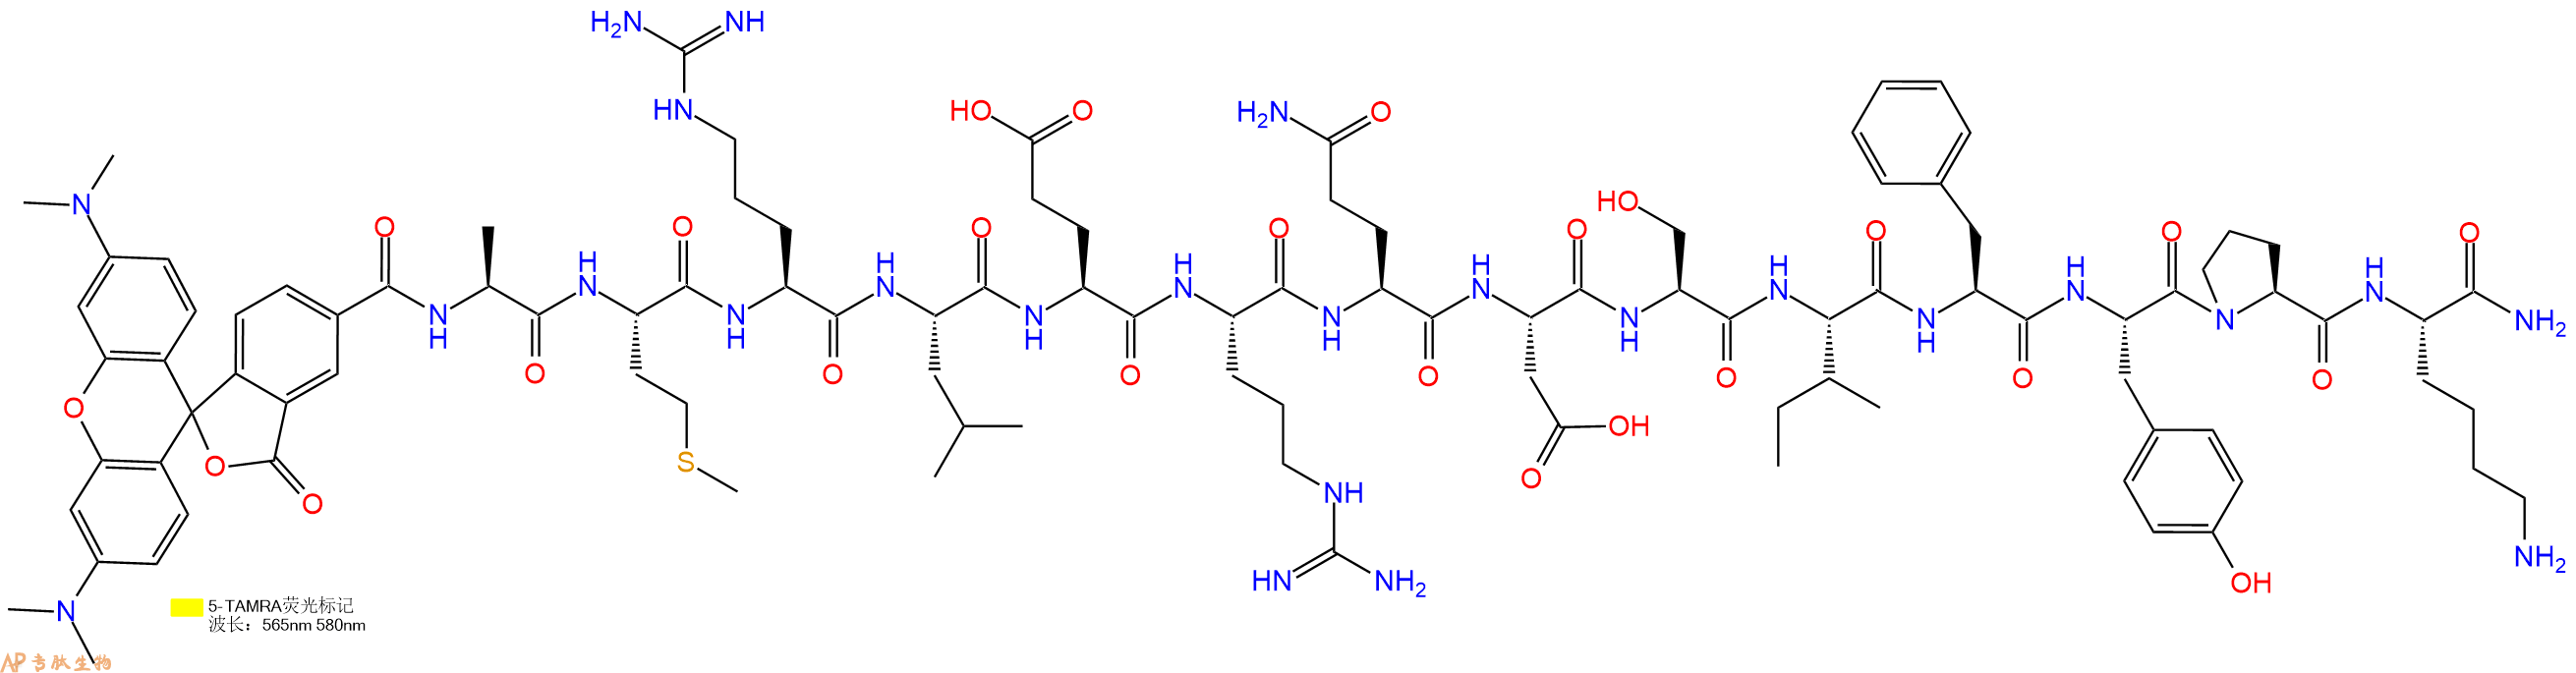 专肽生物产品5TAMRA-AMRLERQDSIFYPK-NH2